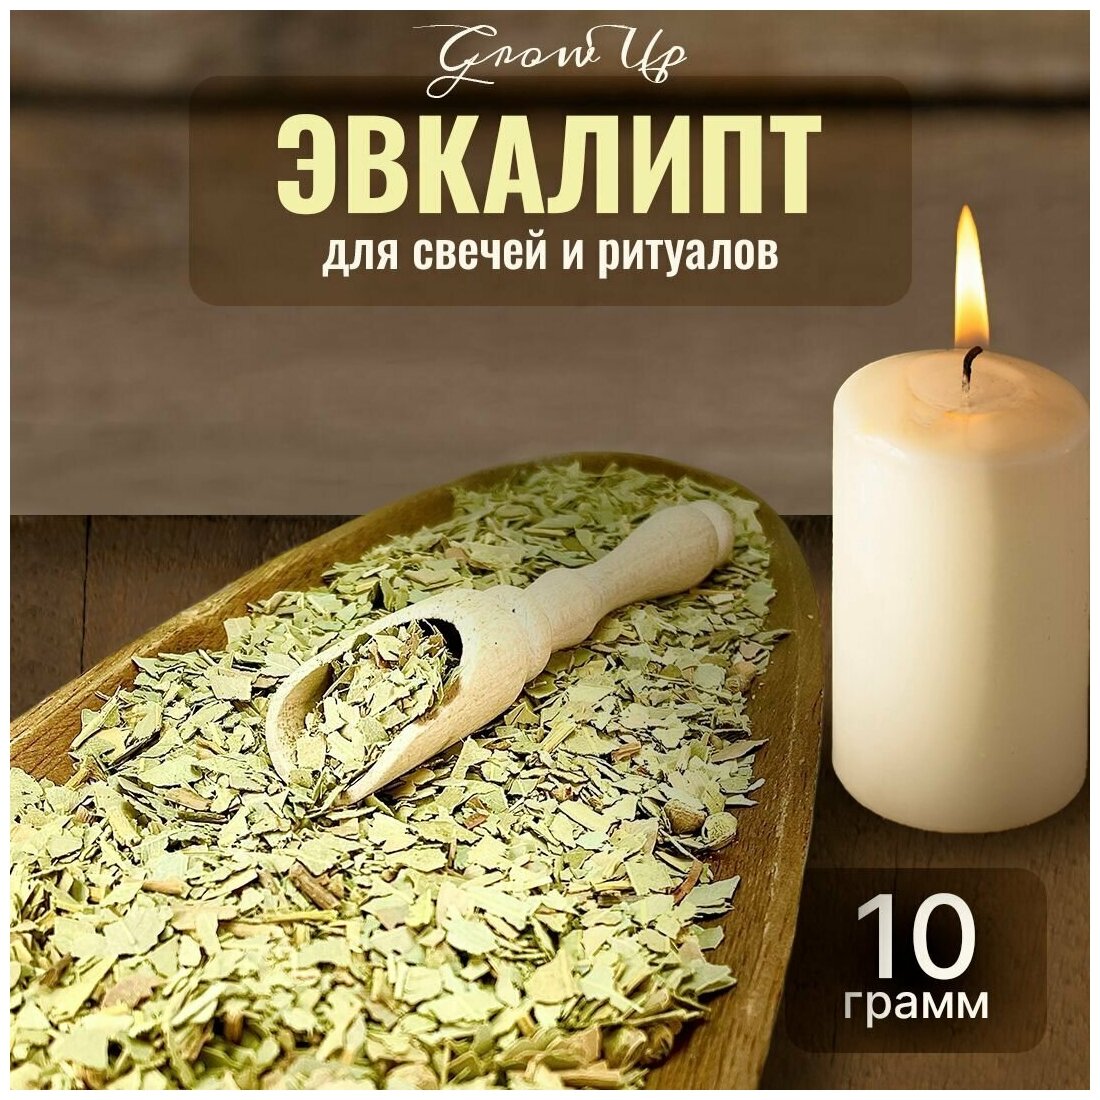 Сухая трава Эвкалипт для свечей и ритуалов, 10 гр